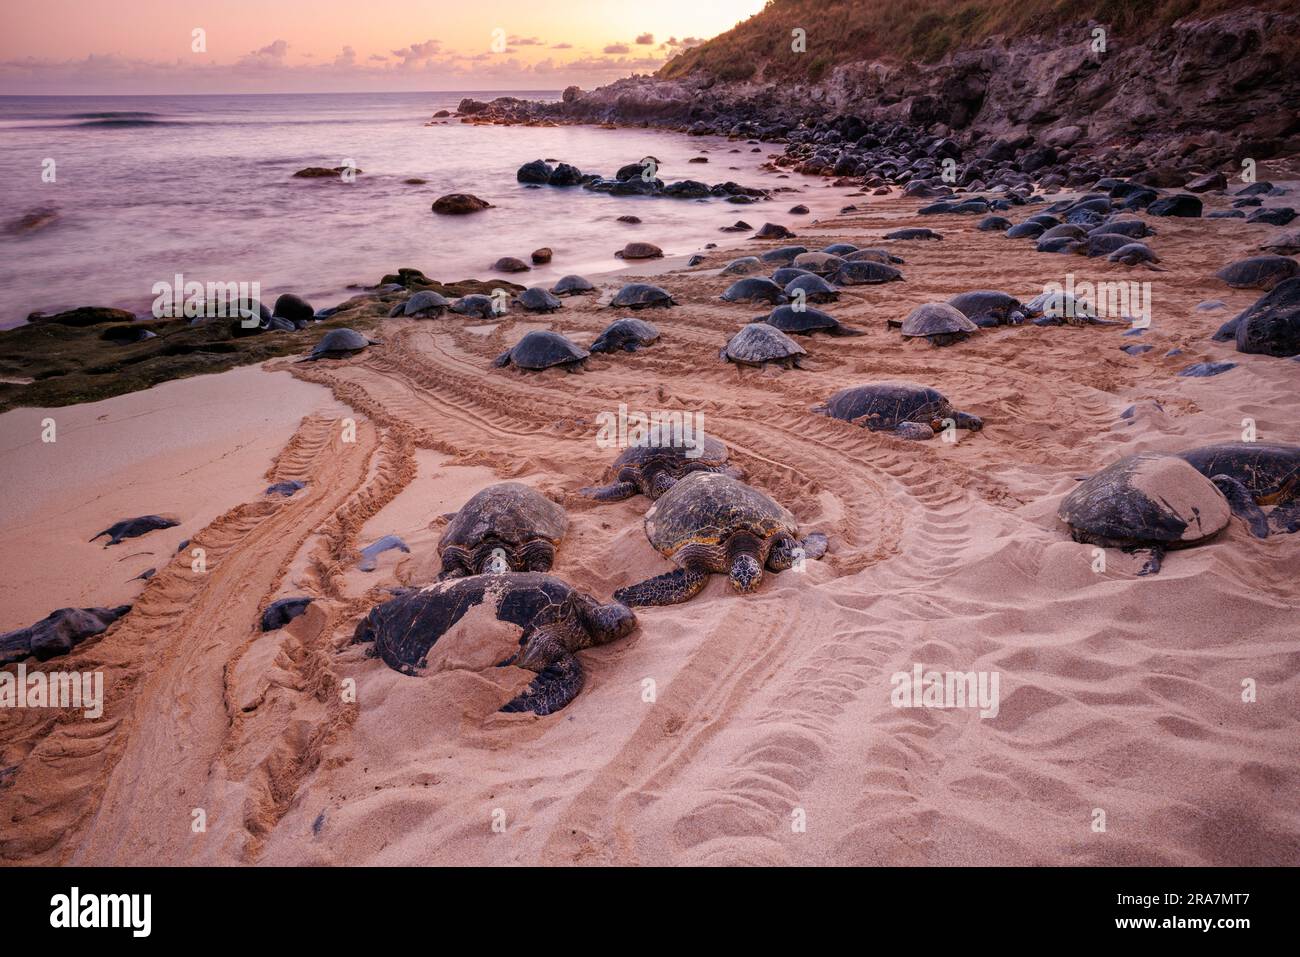 Diese grünen Meeresschildkröten, Chelonia mydas, eine vom Aussterben bedrohte Art, haben sich aus dem Wasser auf den Ho'okipa Beach auf Maui, Hawaii, gezogen. Fotografiert bei Sunr Stockfoto